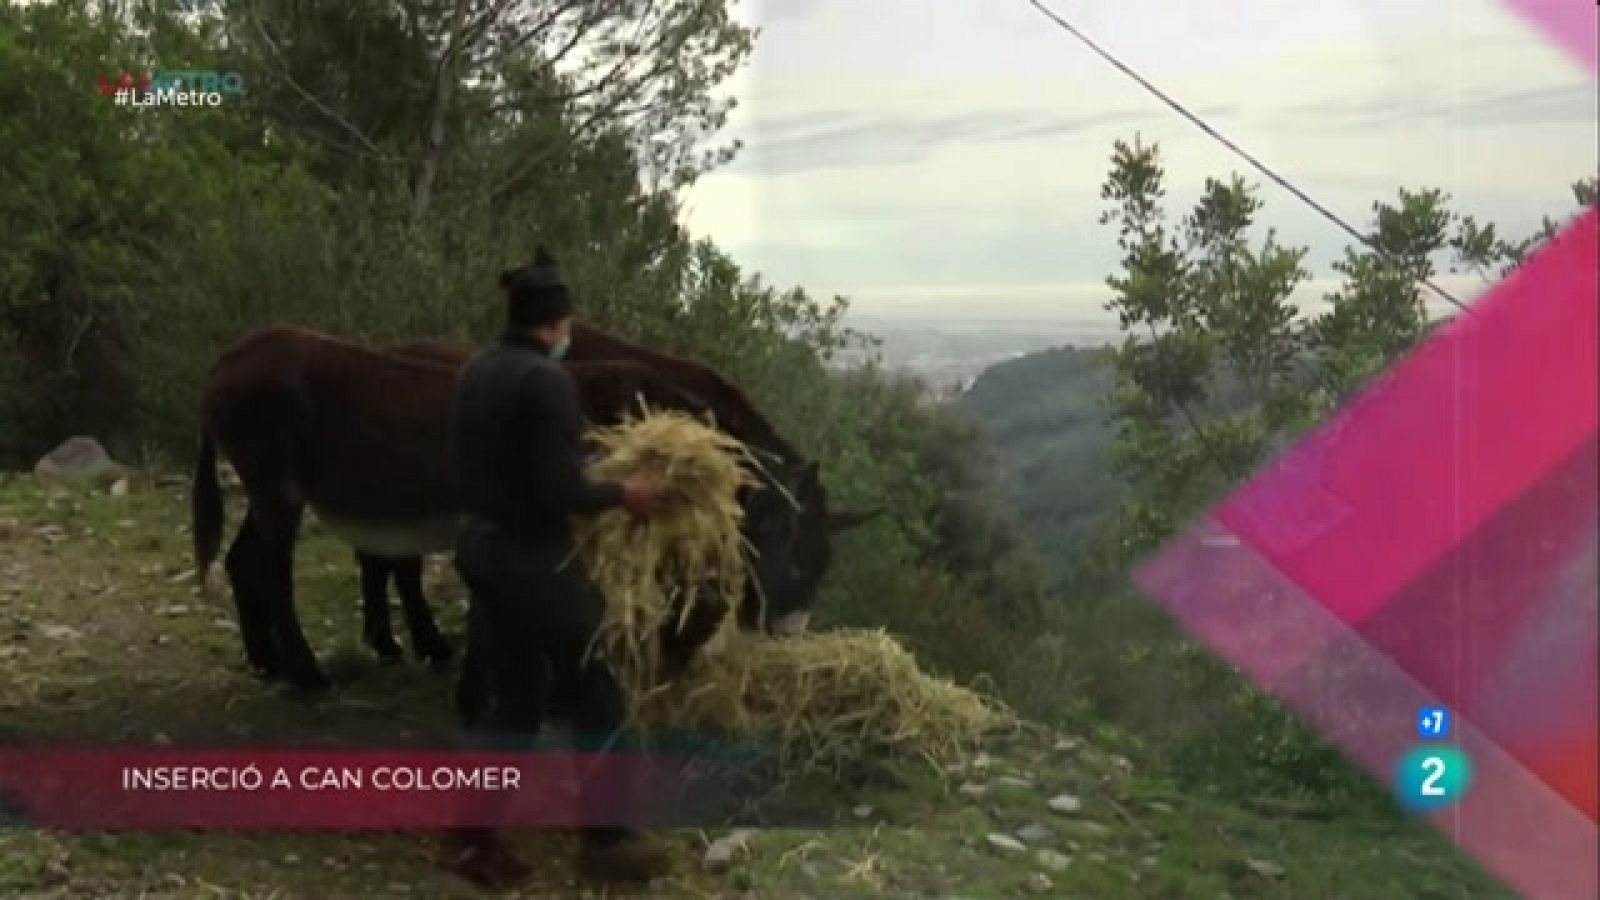 Inserció a Can Colomer, Circ social i Repartiment sostenible | La Metro - RTVE Catalunya